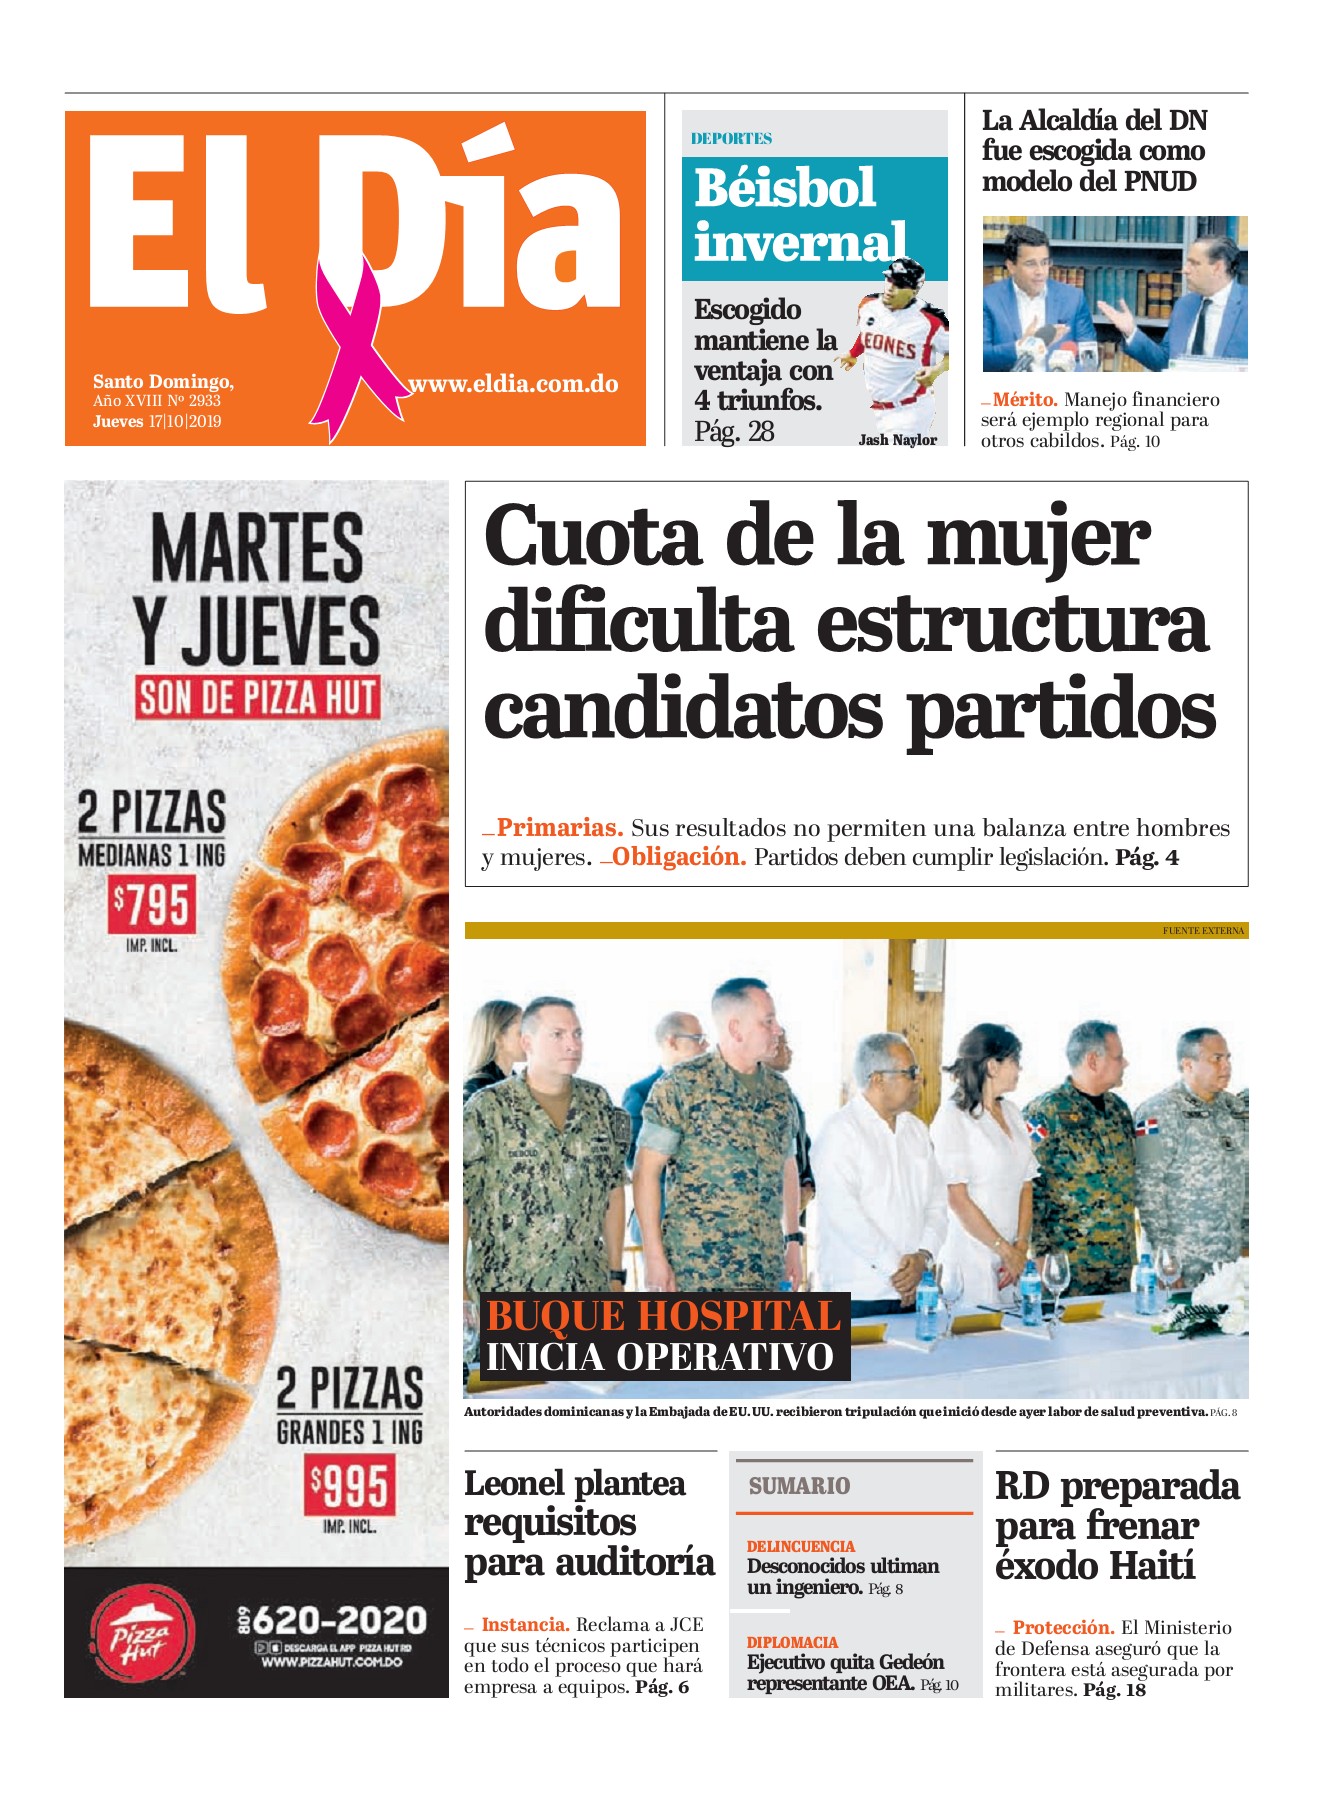 Portada Periódico El Día, Jueves 17 de Octubre, 2019